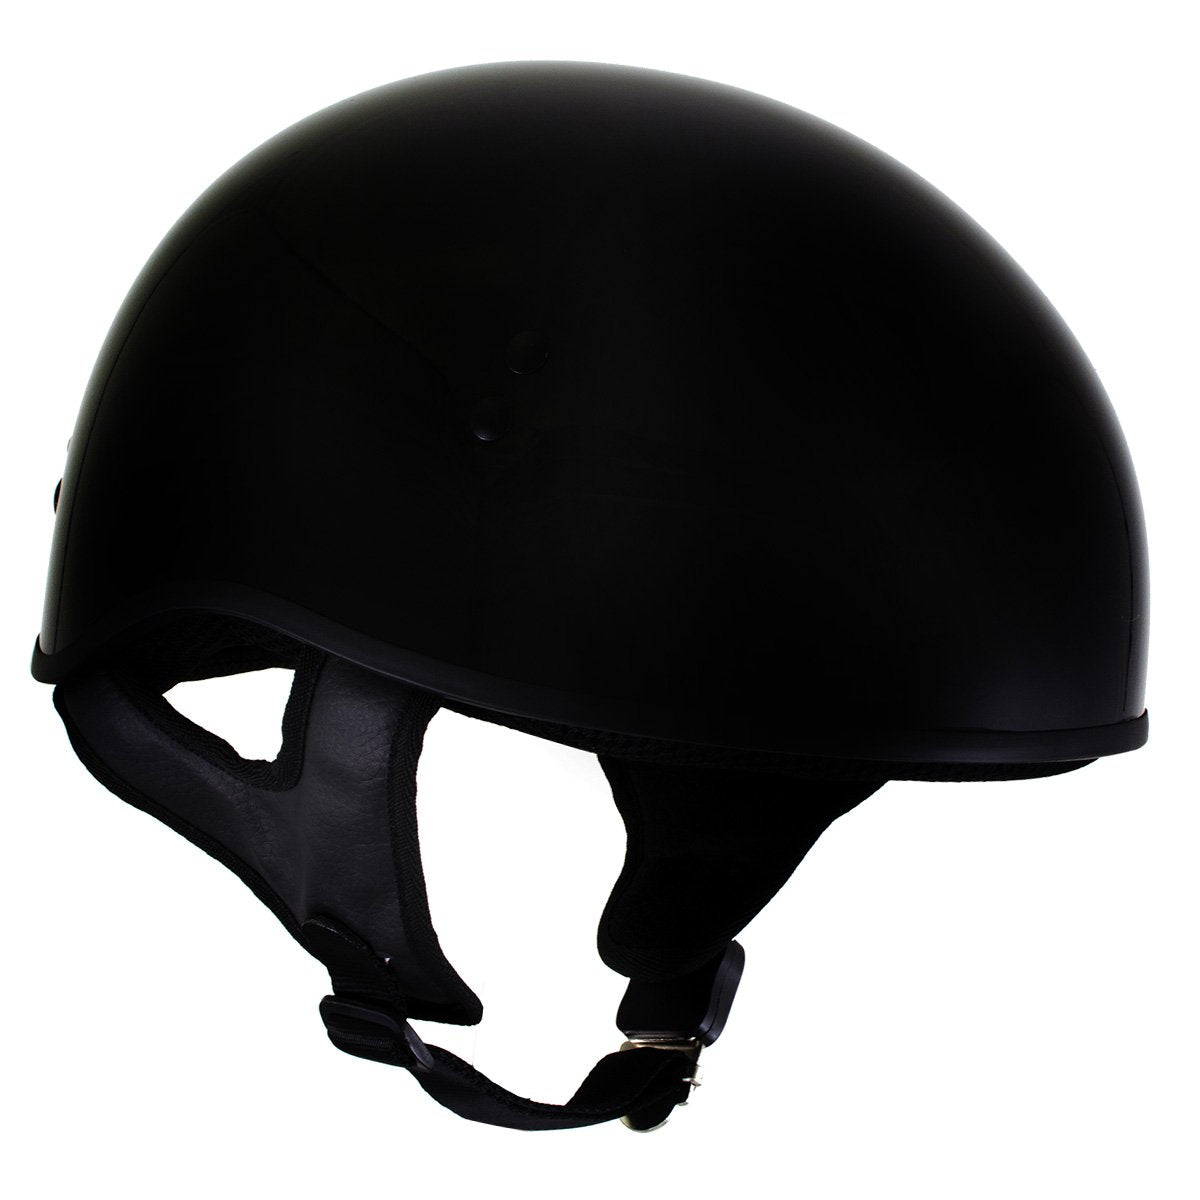 Hot Leathers T68 'The O.G.' Gloss Black DOT Helmet with Milwaukee Leather MP7922FMSET Heated Balaclava Bundle